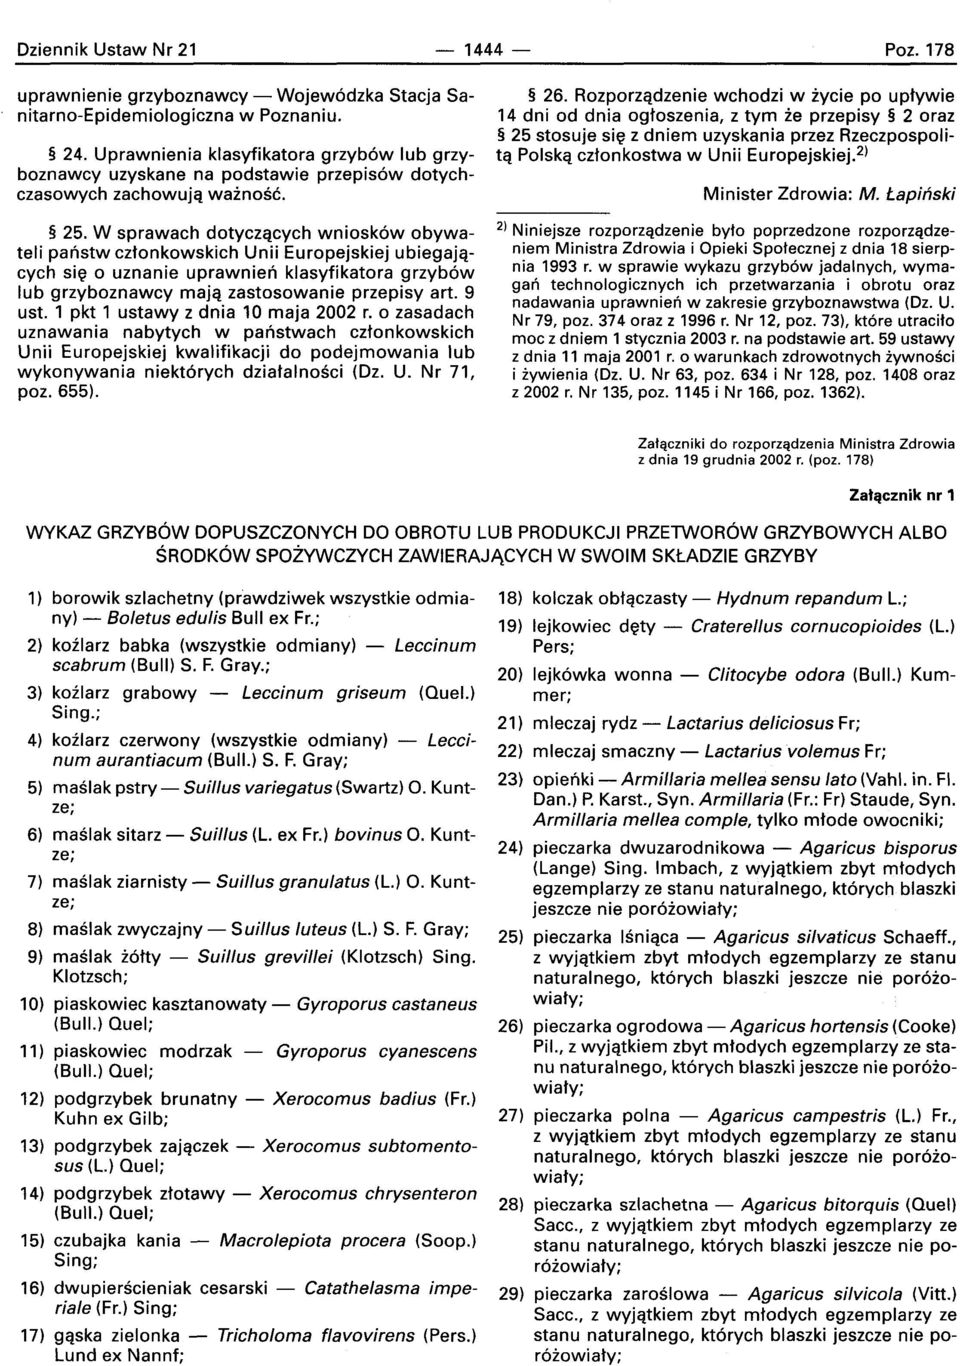 W sprawach dotyczqcych wniosk6w obywateli panstw cztonkowskich Unii Europejskiej ubiegajqcych sie 0 uznanie uprawnien klasyfikatora grzyb6w lub grzyboznawcy maja zastosowanie przepisy art. 9 ust.